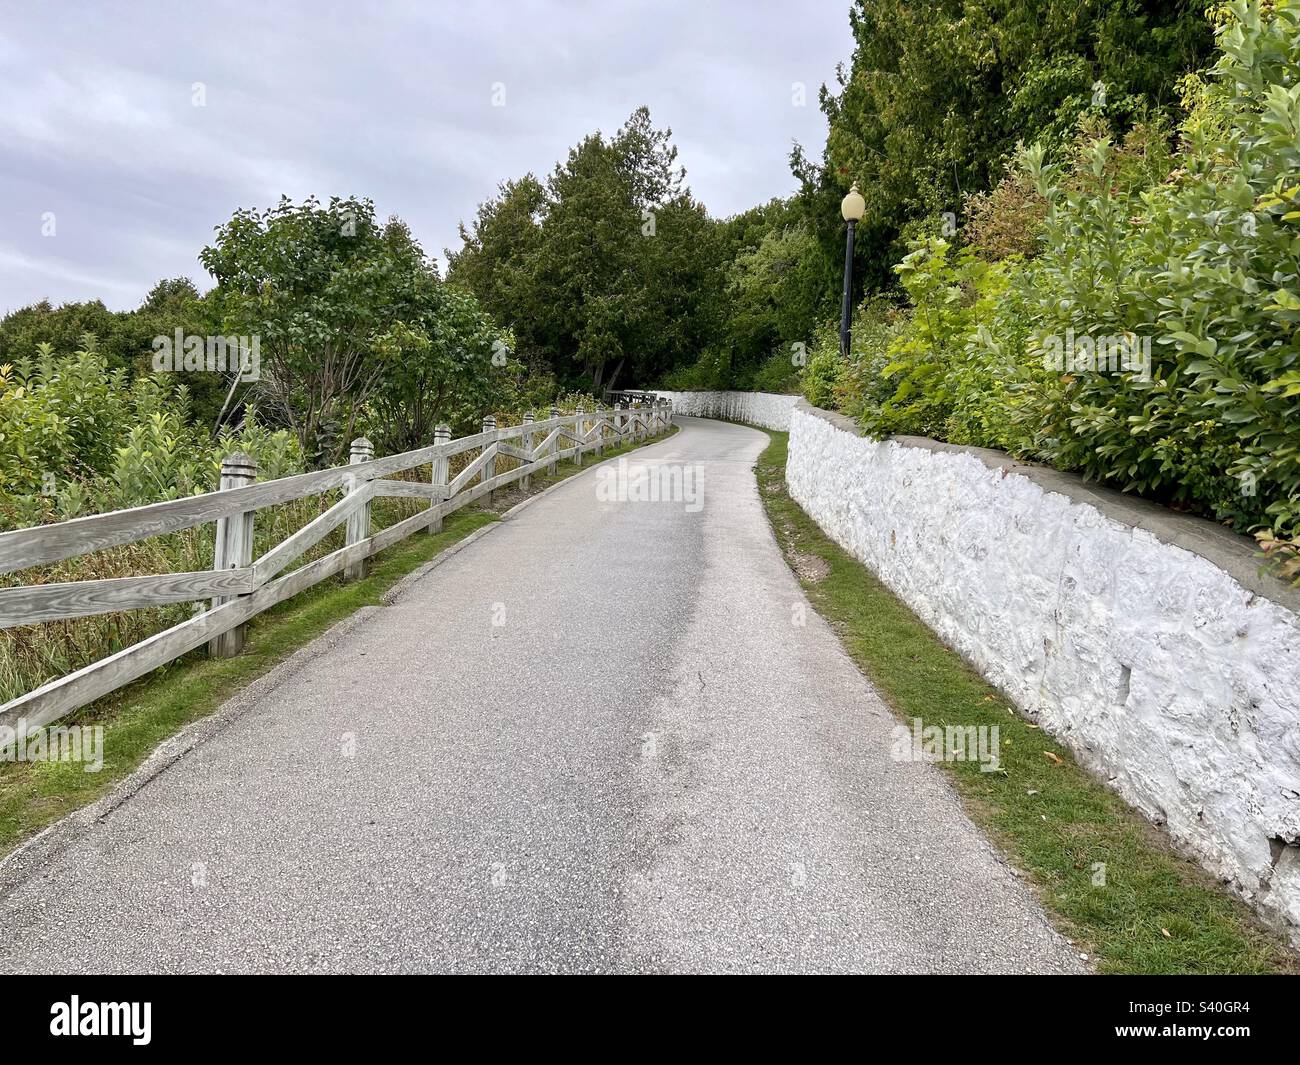 Gepflasterte Straße, die einen Hügel hinaufführt, mit einem weißen Zaun auf der einen Seite und einem Steinzaun auf der anderen. Wunderschöne grüne Bäume und Sträucher säumen die Straße. Foto aufgenommen auf Mackinac Island Michigan Stockfoto